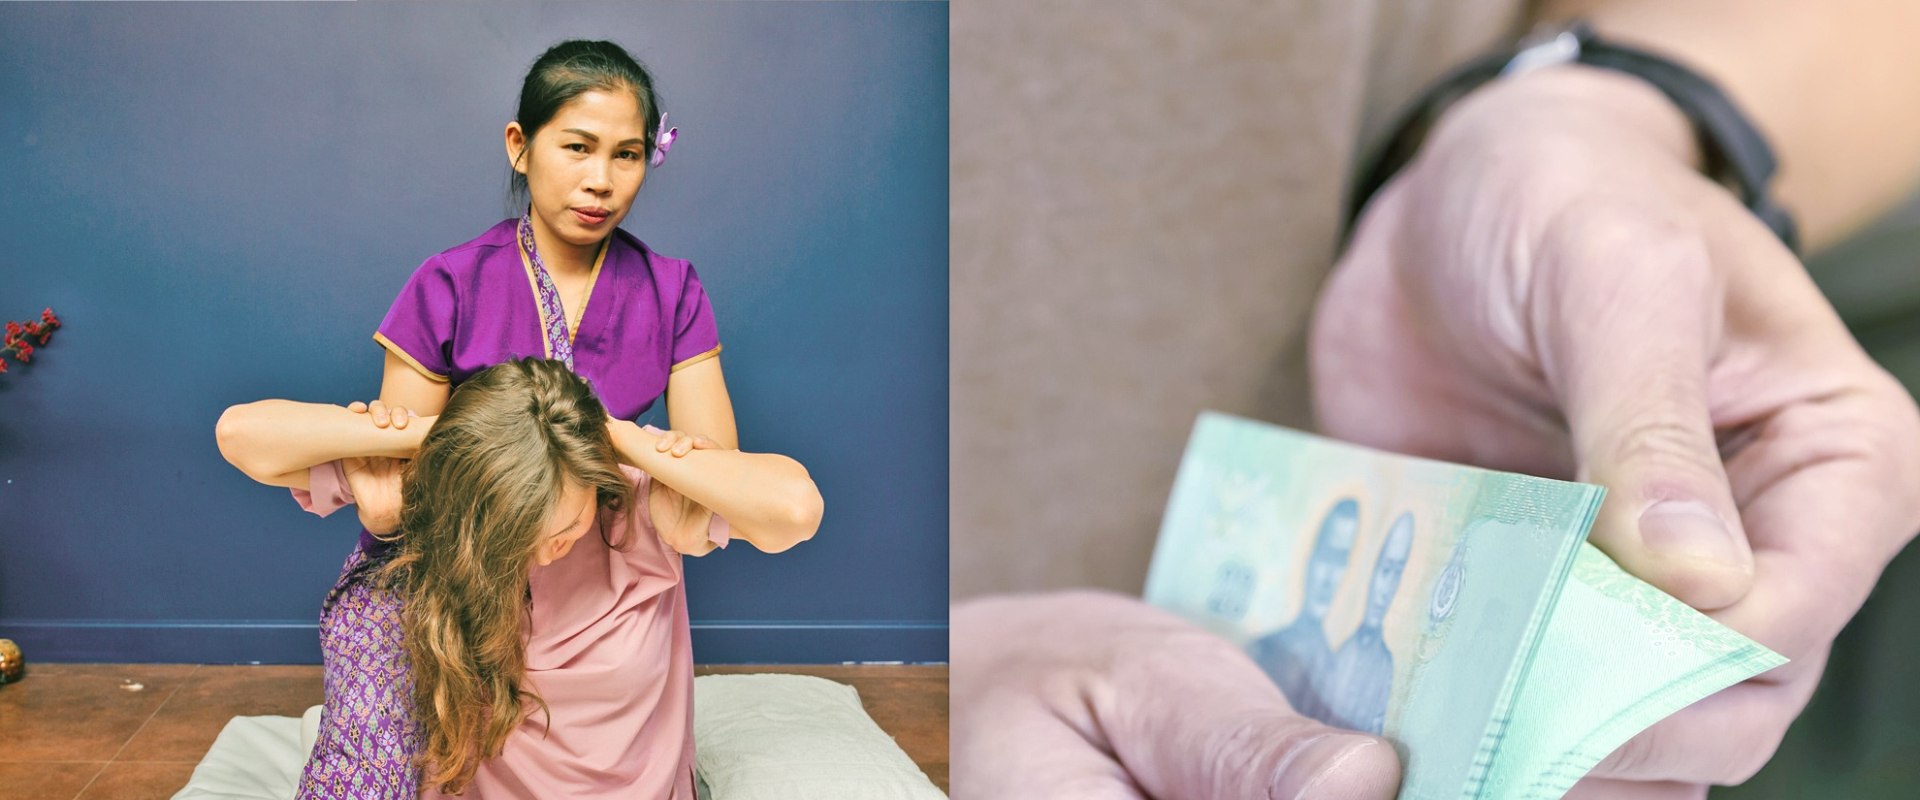 Wie viel kostet eine ganzkörpermassage in thailand?